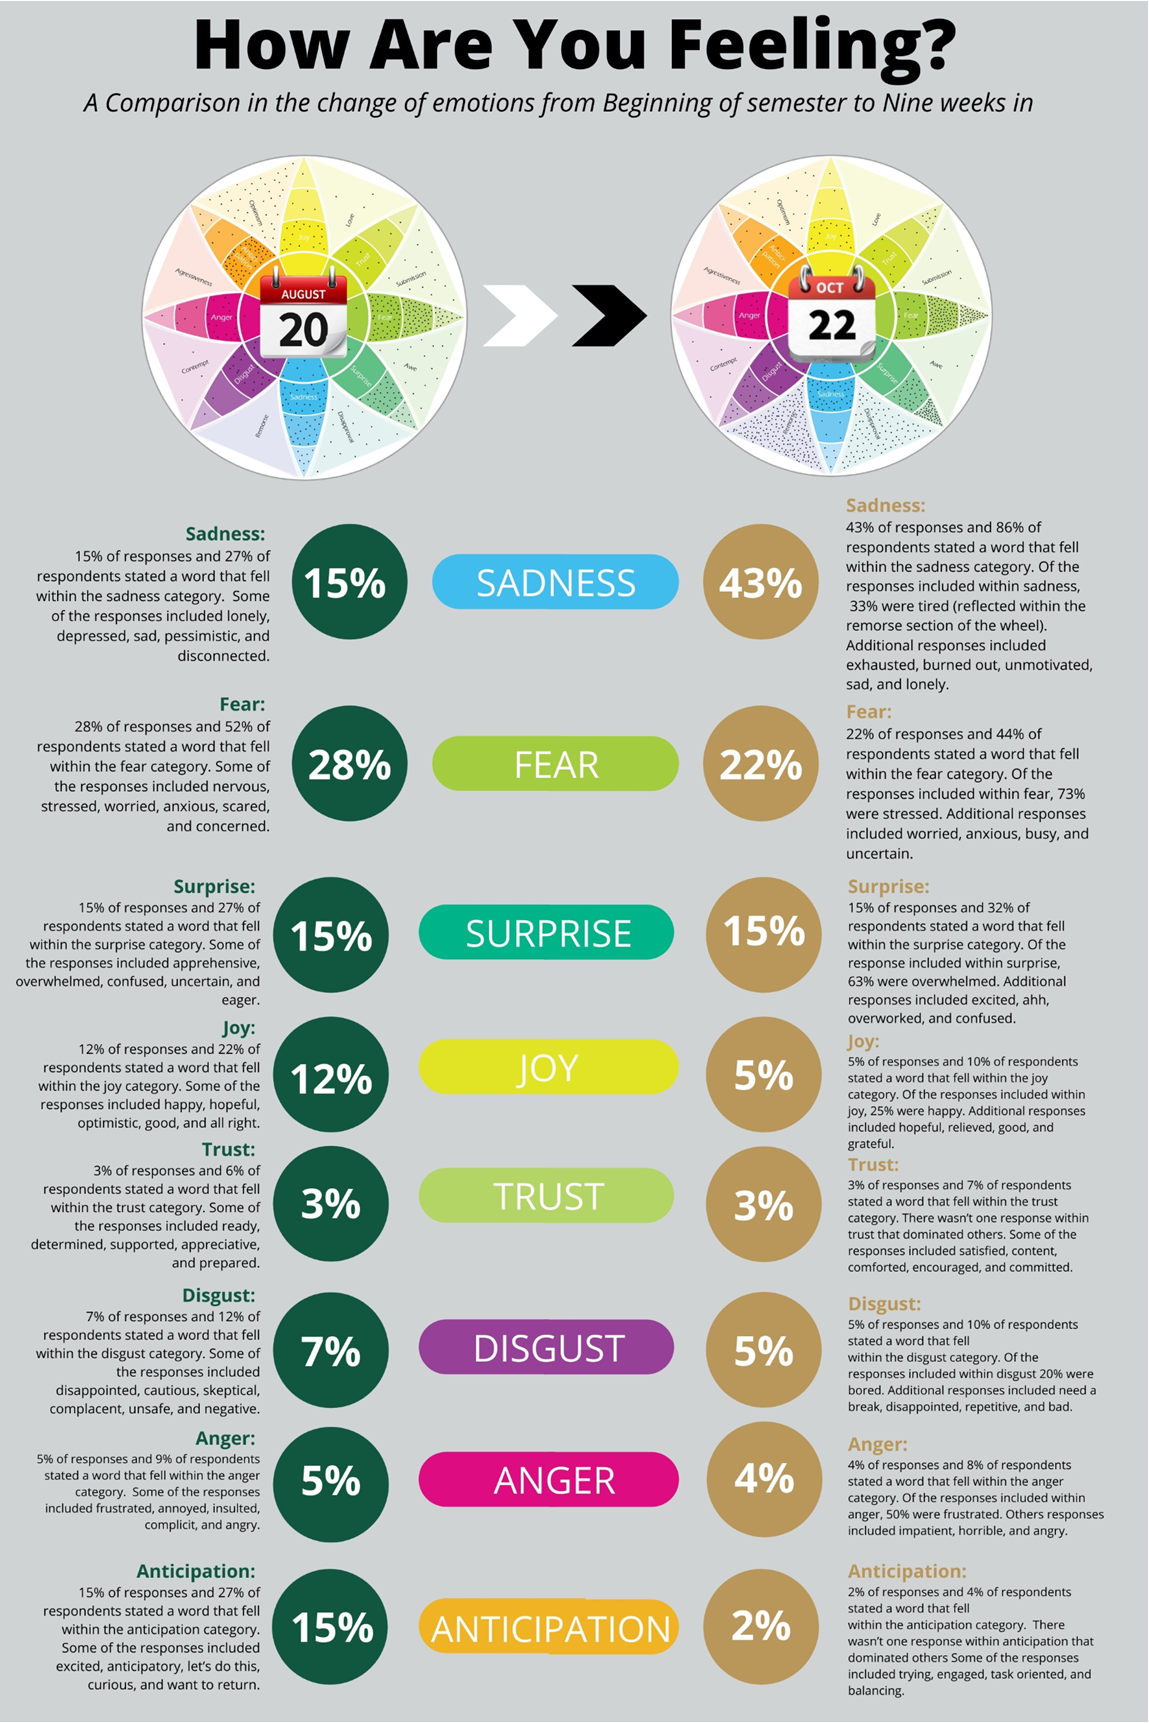 Anger 5% vs 4%, Anticipation 15% vs 2%, Joy 12% vs 5%, Trust 3% vs 3%, Fear 28% vs 22%, Surprise 15% vs 15%, Sadness 15% vs 43%, Disgust 7% vs 5%